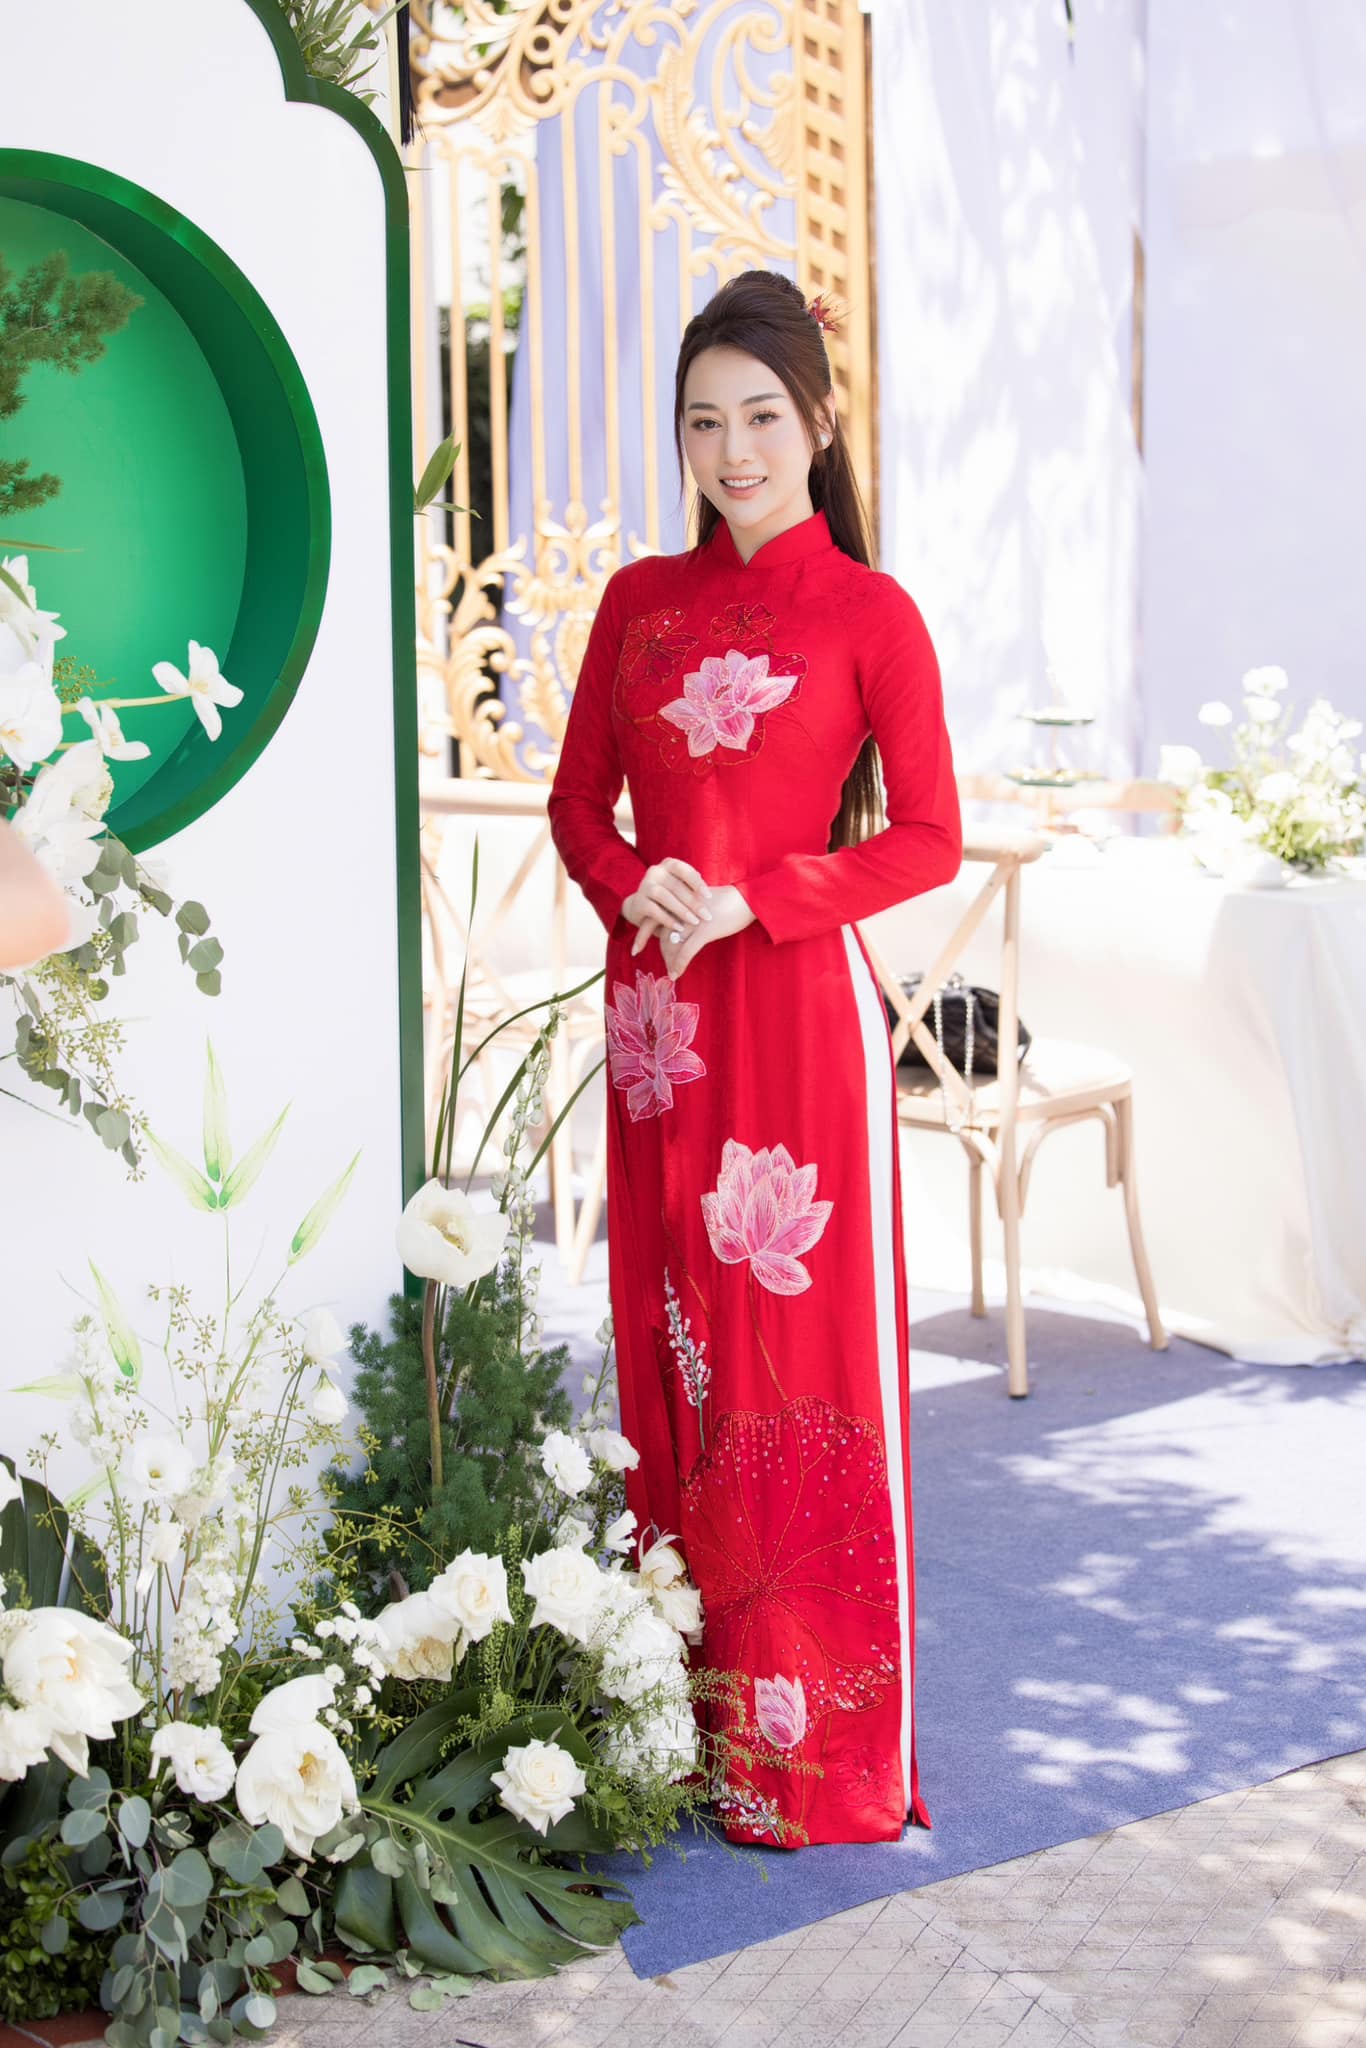 Chiếc áo dài với họa tiết hoa sen do Hoa hậu Ngọc Hân thiết kế riêng.